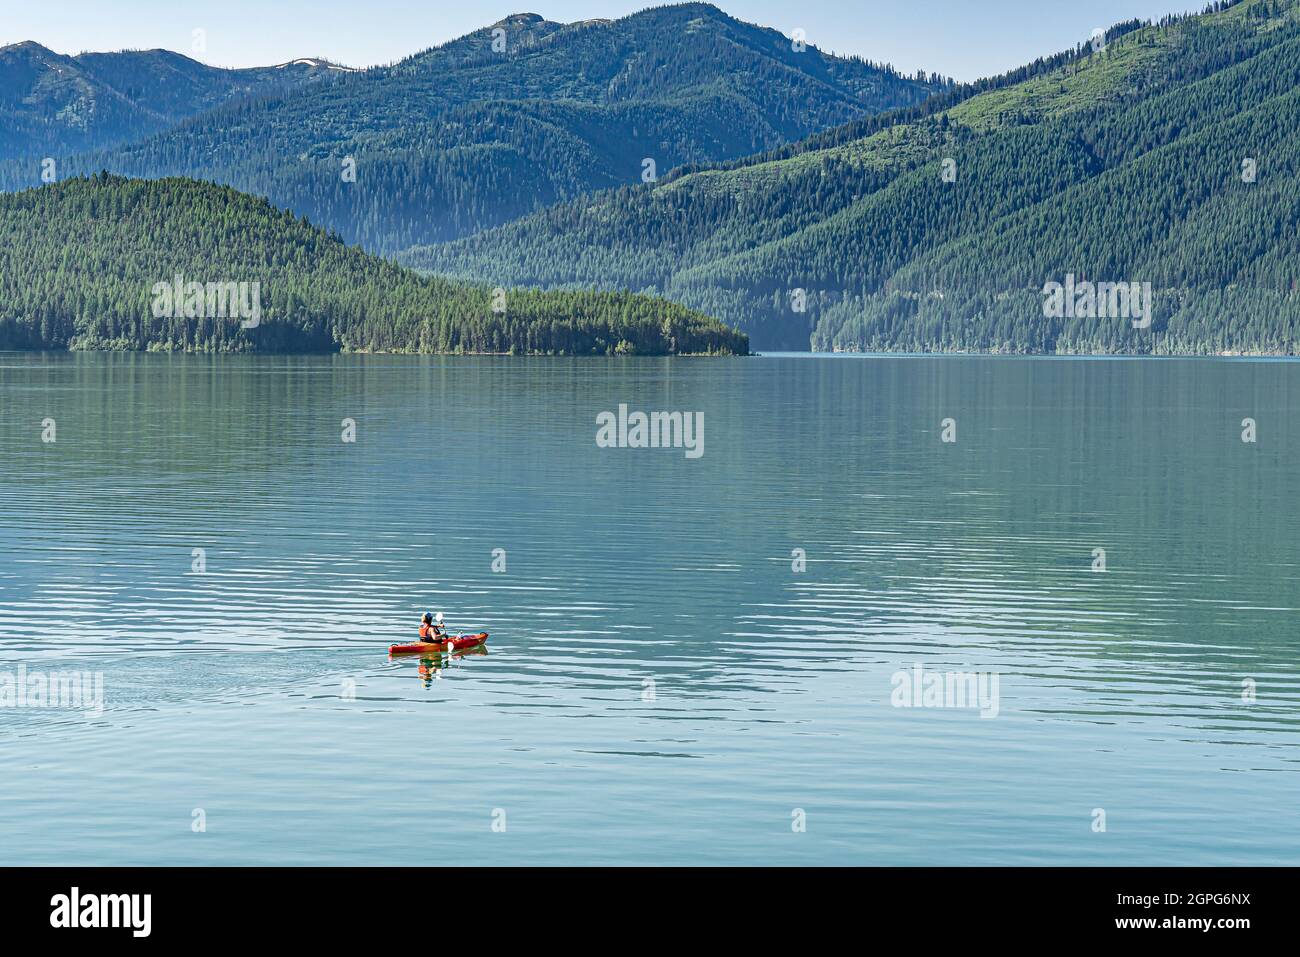 Frau, die alleine auf einem wunderschönen See mit Bergen Kajak gefahren ist Stockfoto